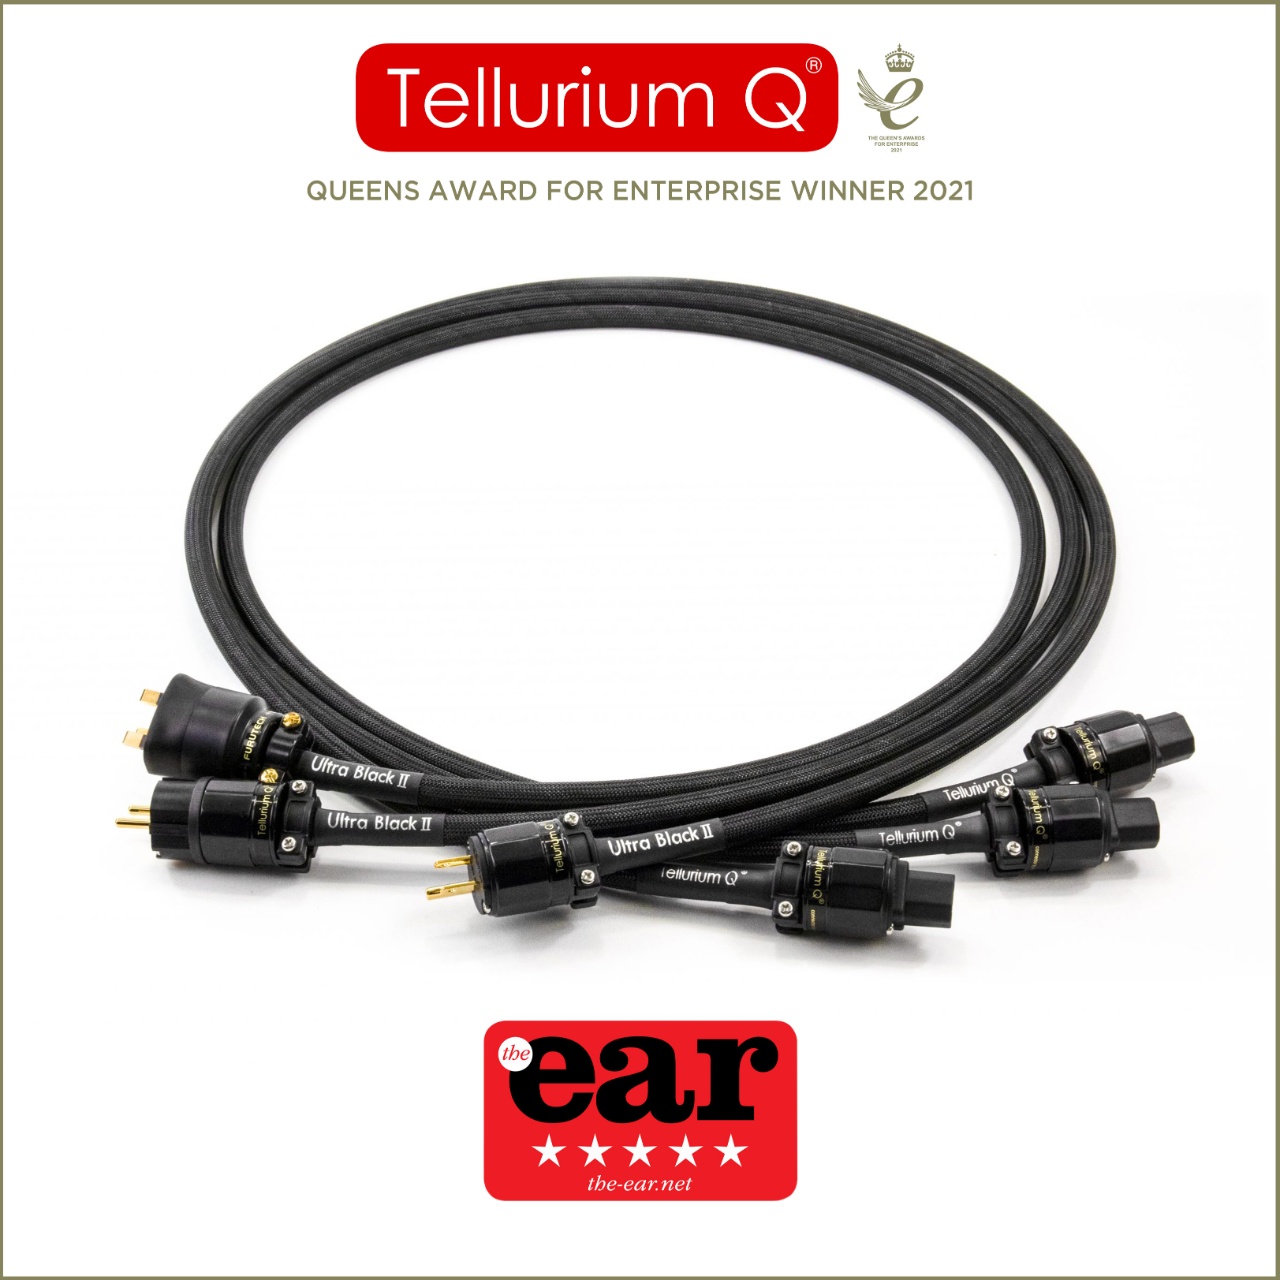 Tellurium Q - Ultra Black II Netzkabel - Test von THE EAR